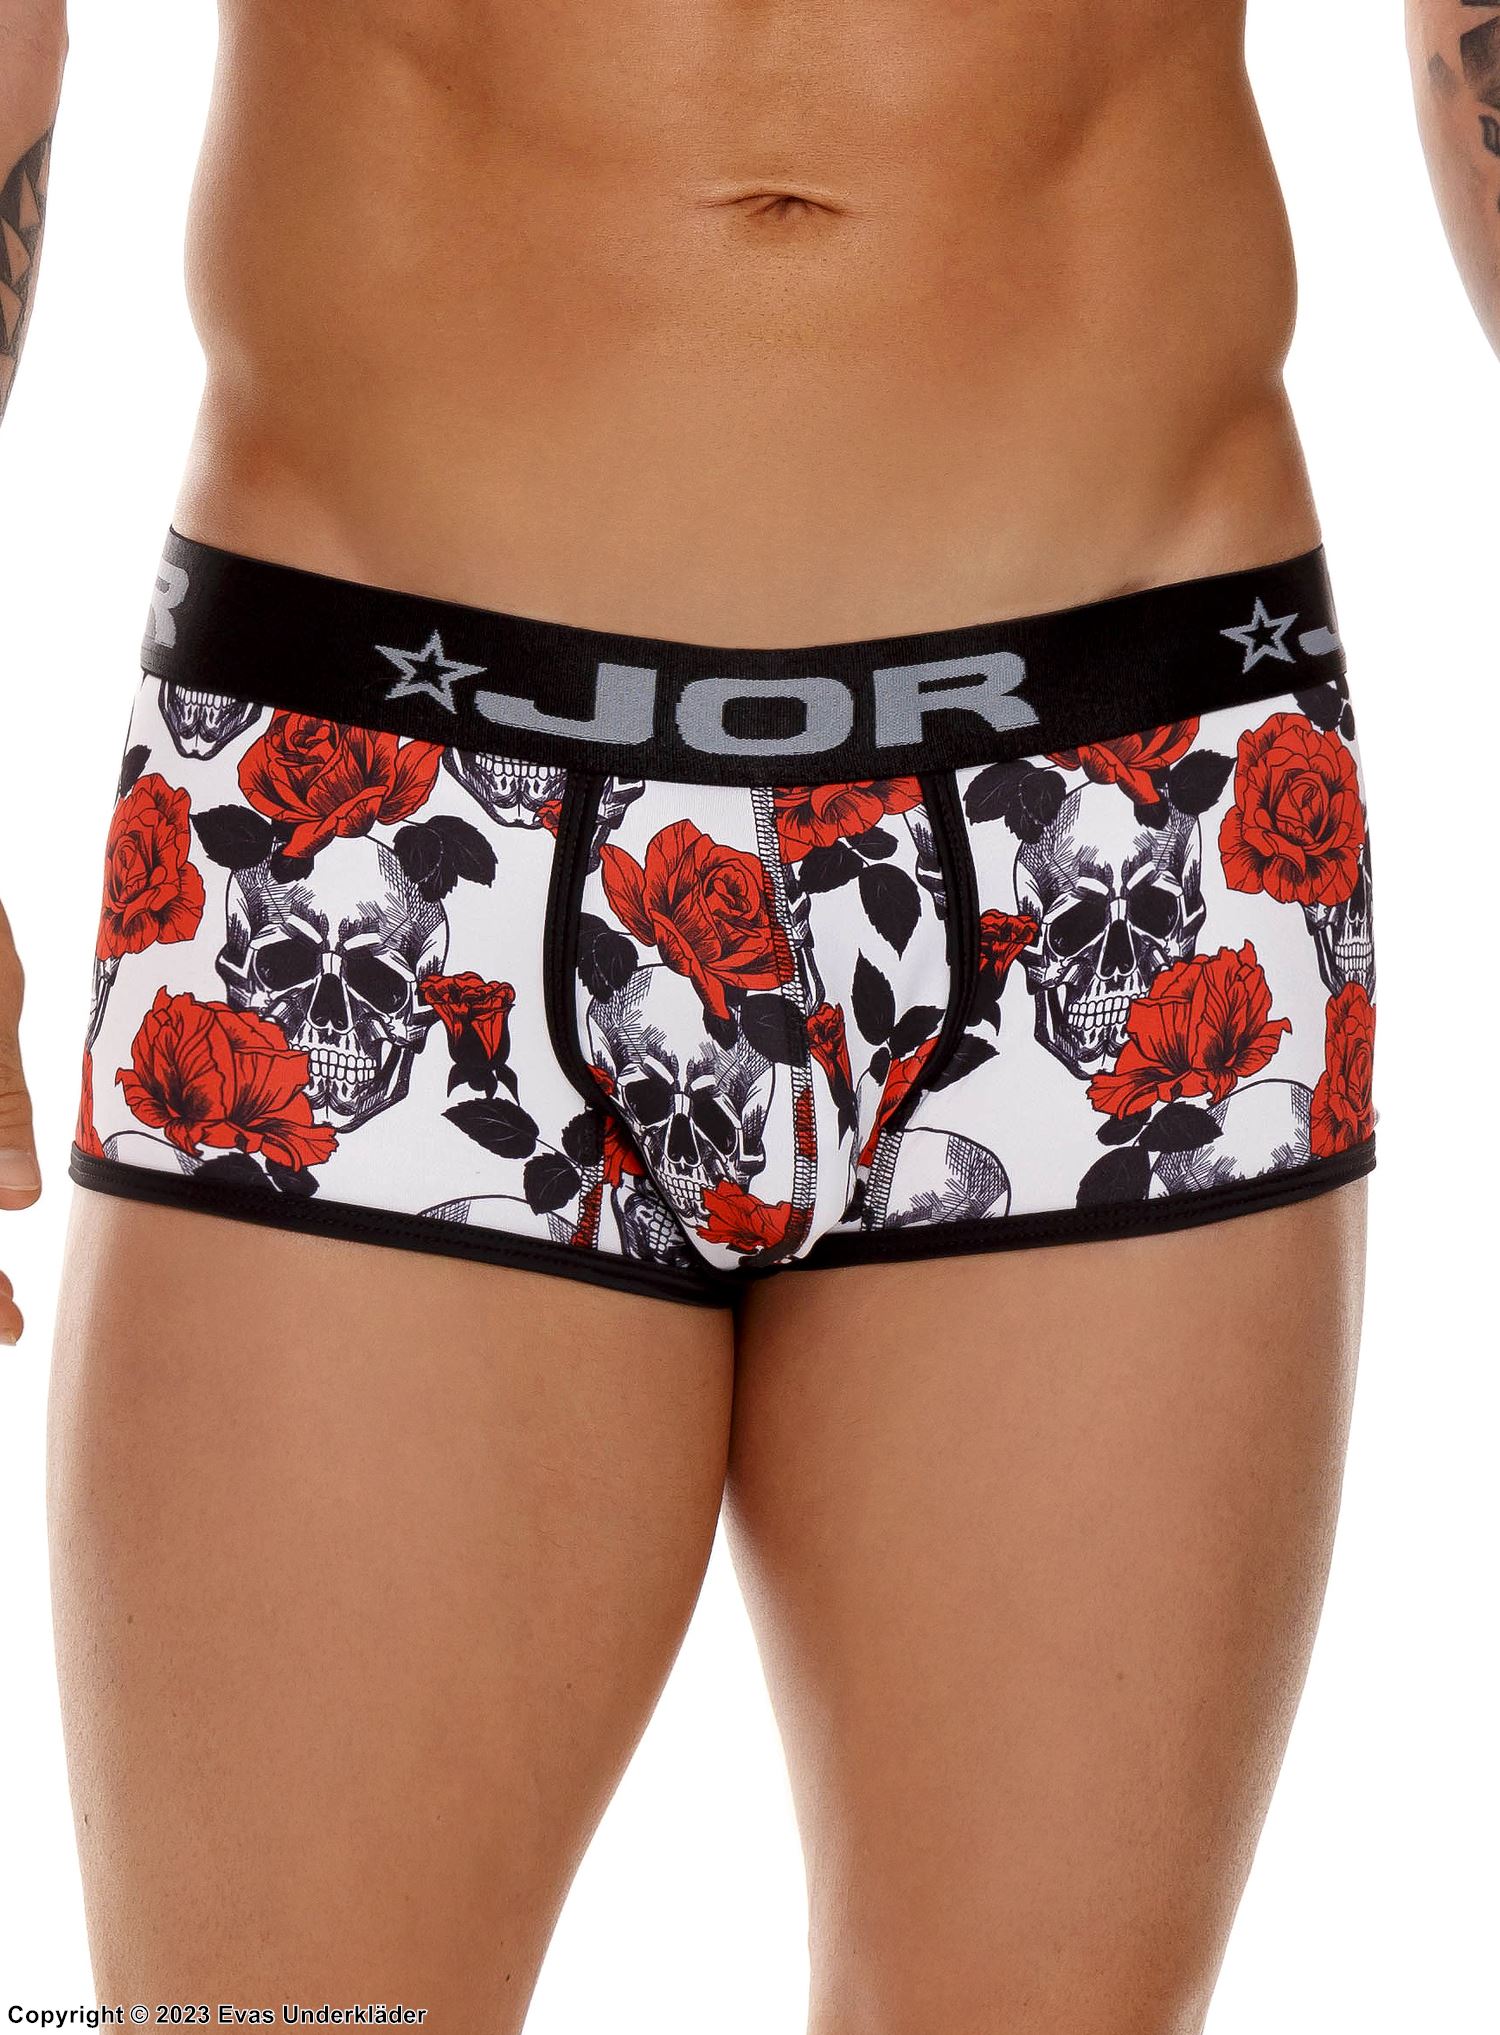 Men's boxer shorts, stars, roses, skulls